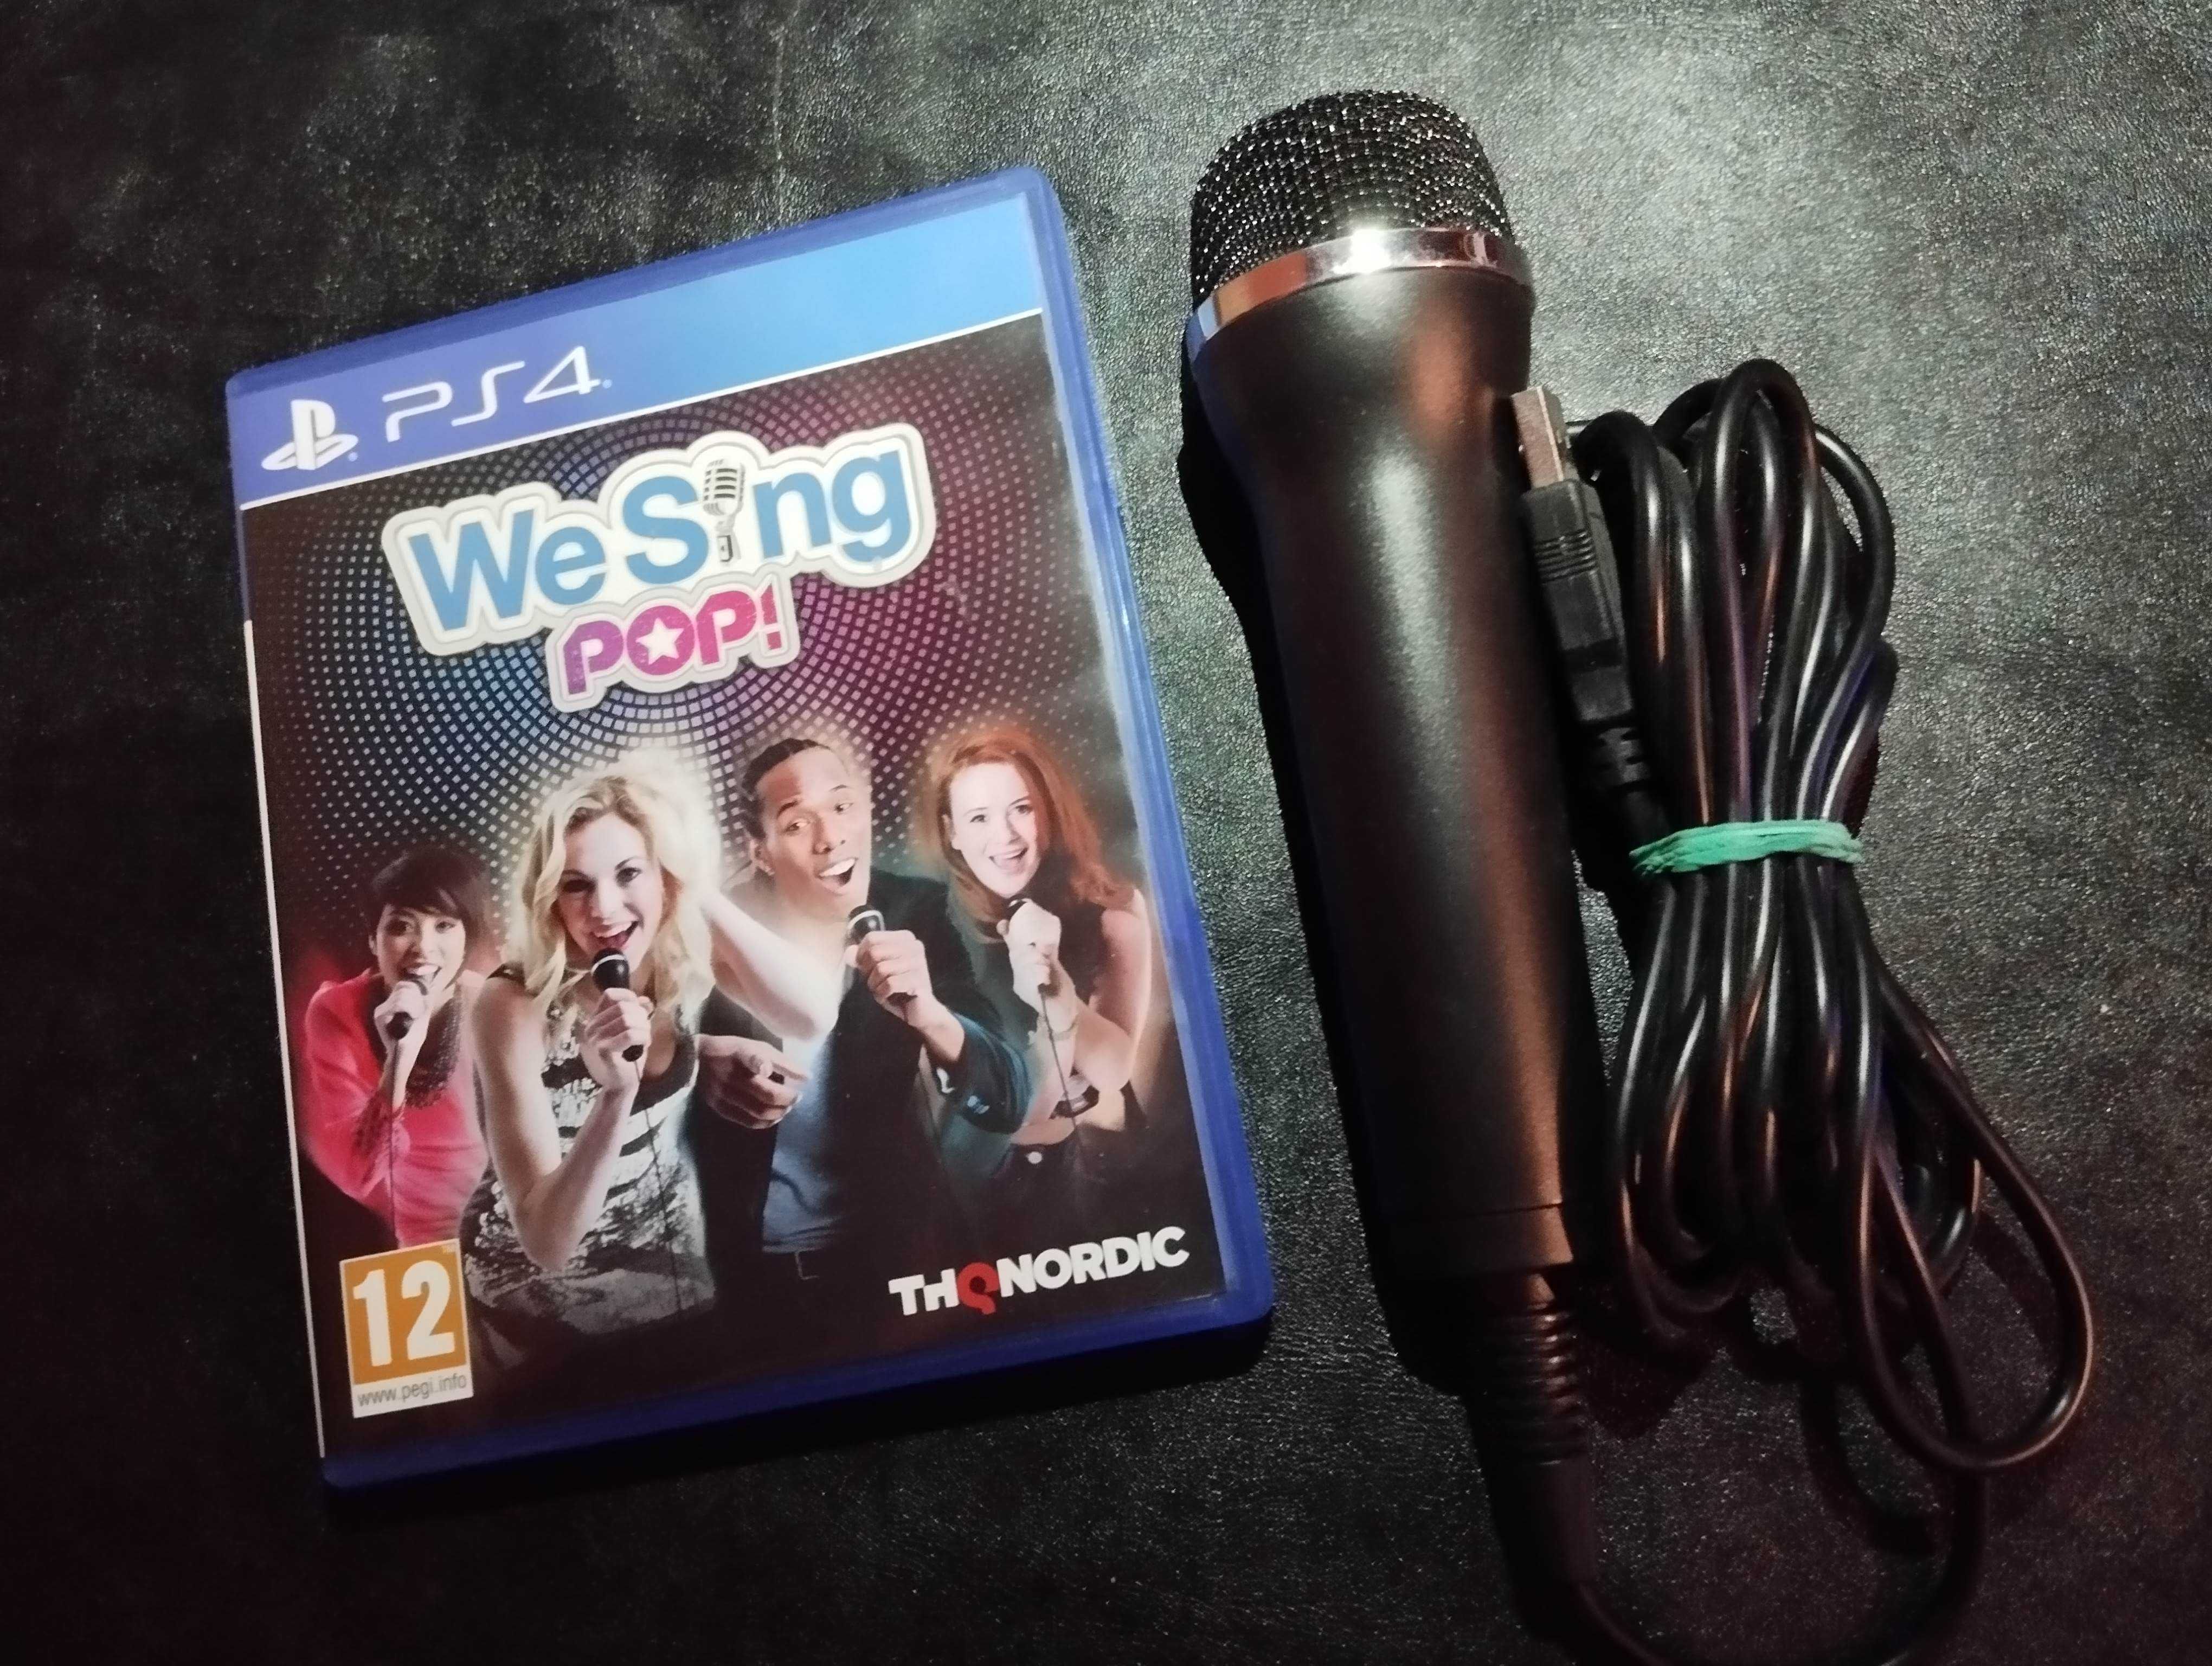 We Sing Pop + mikrofon - PS4 PS5 - unikat, duży wybór gier